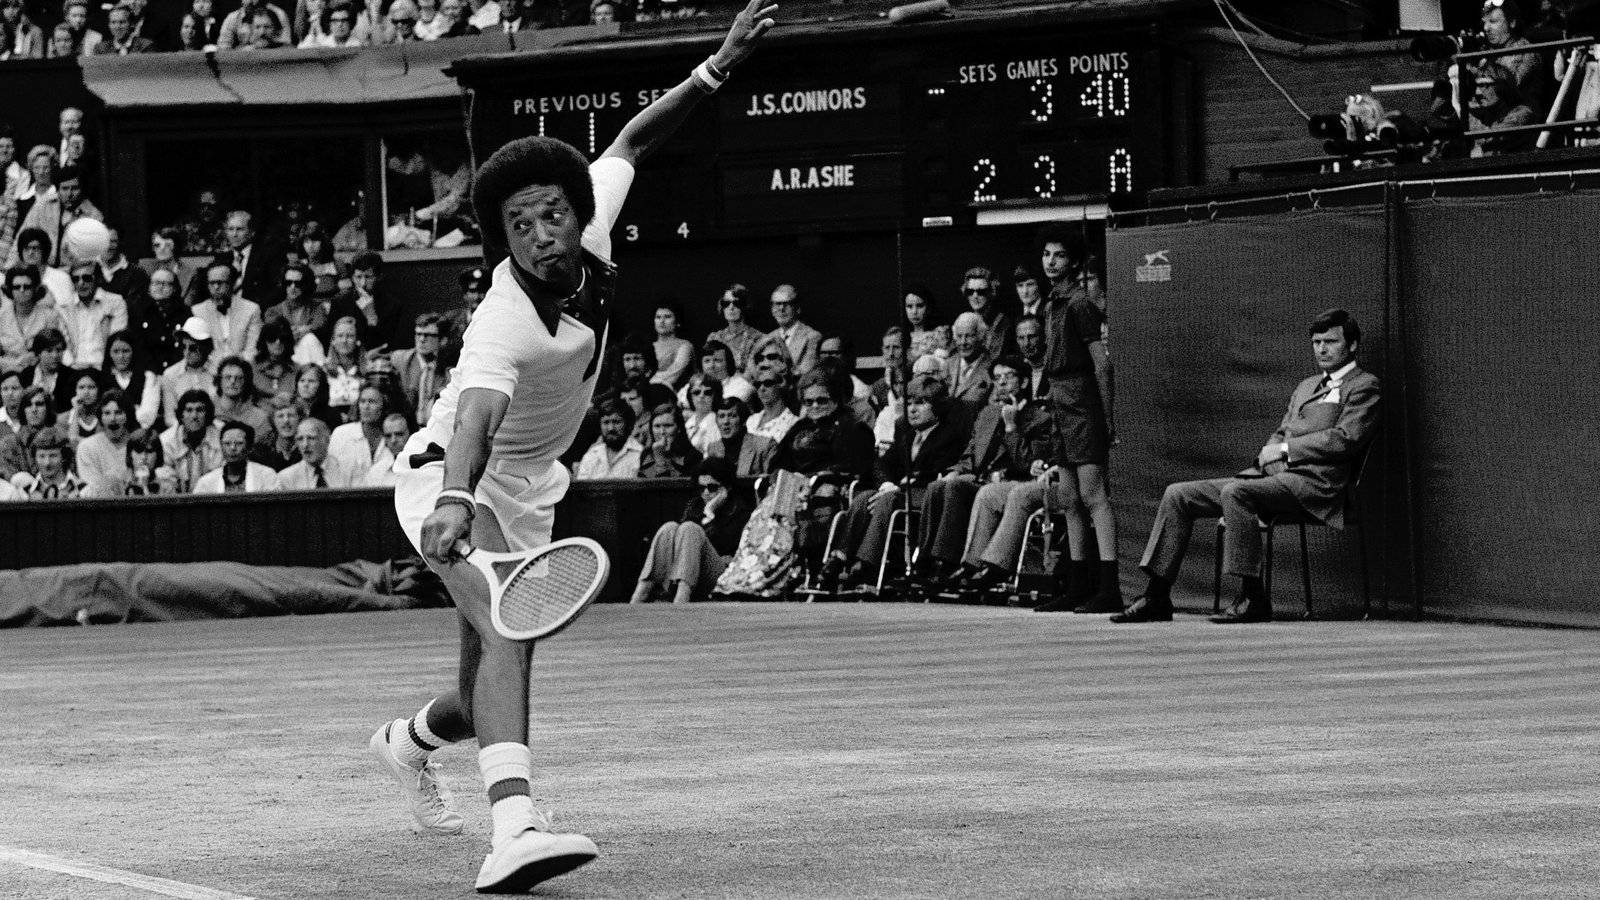 Arthurashe Tennis Player: Arthur Ashe Tennisspelare. Wallpaper